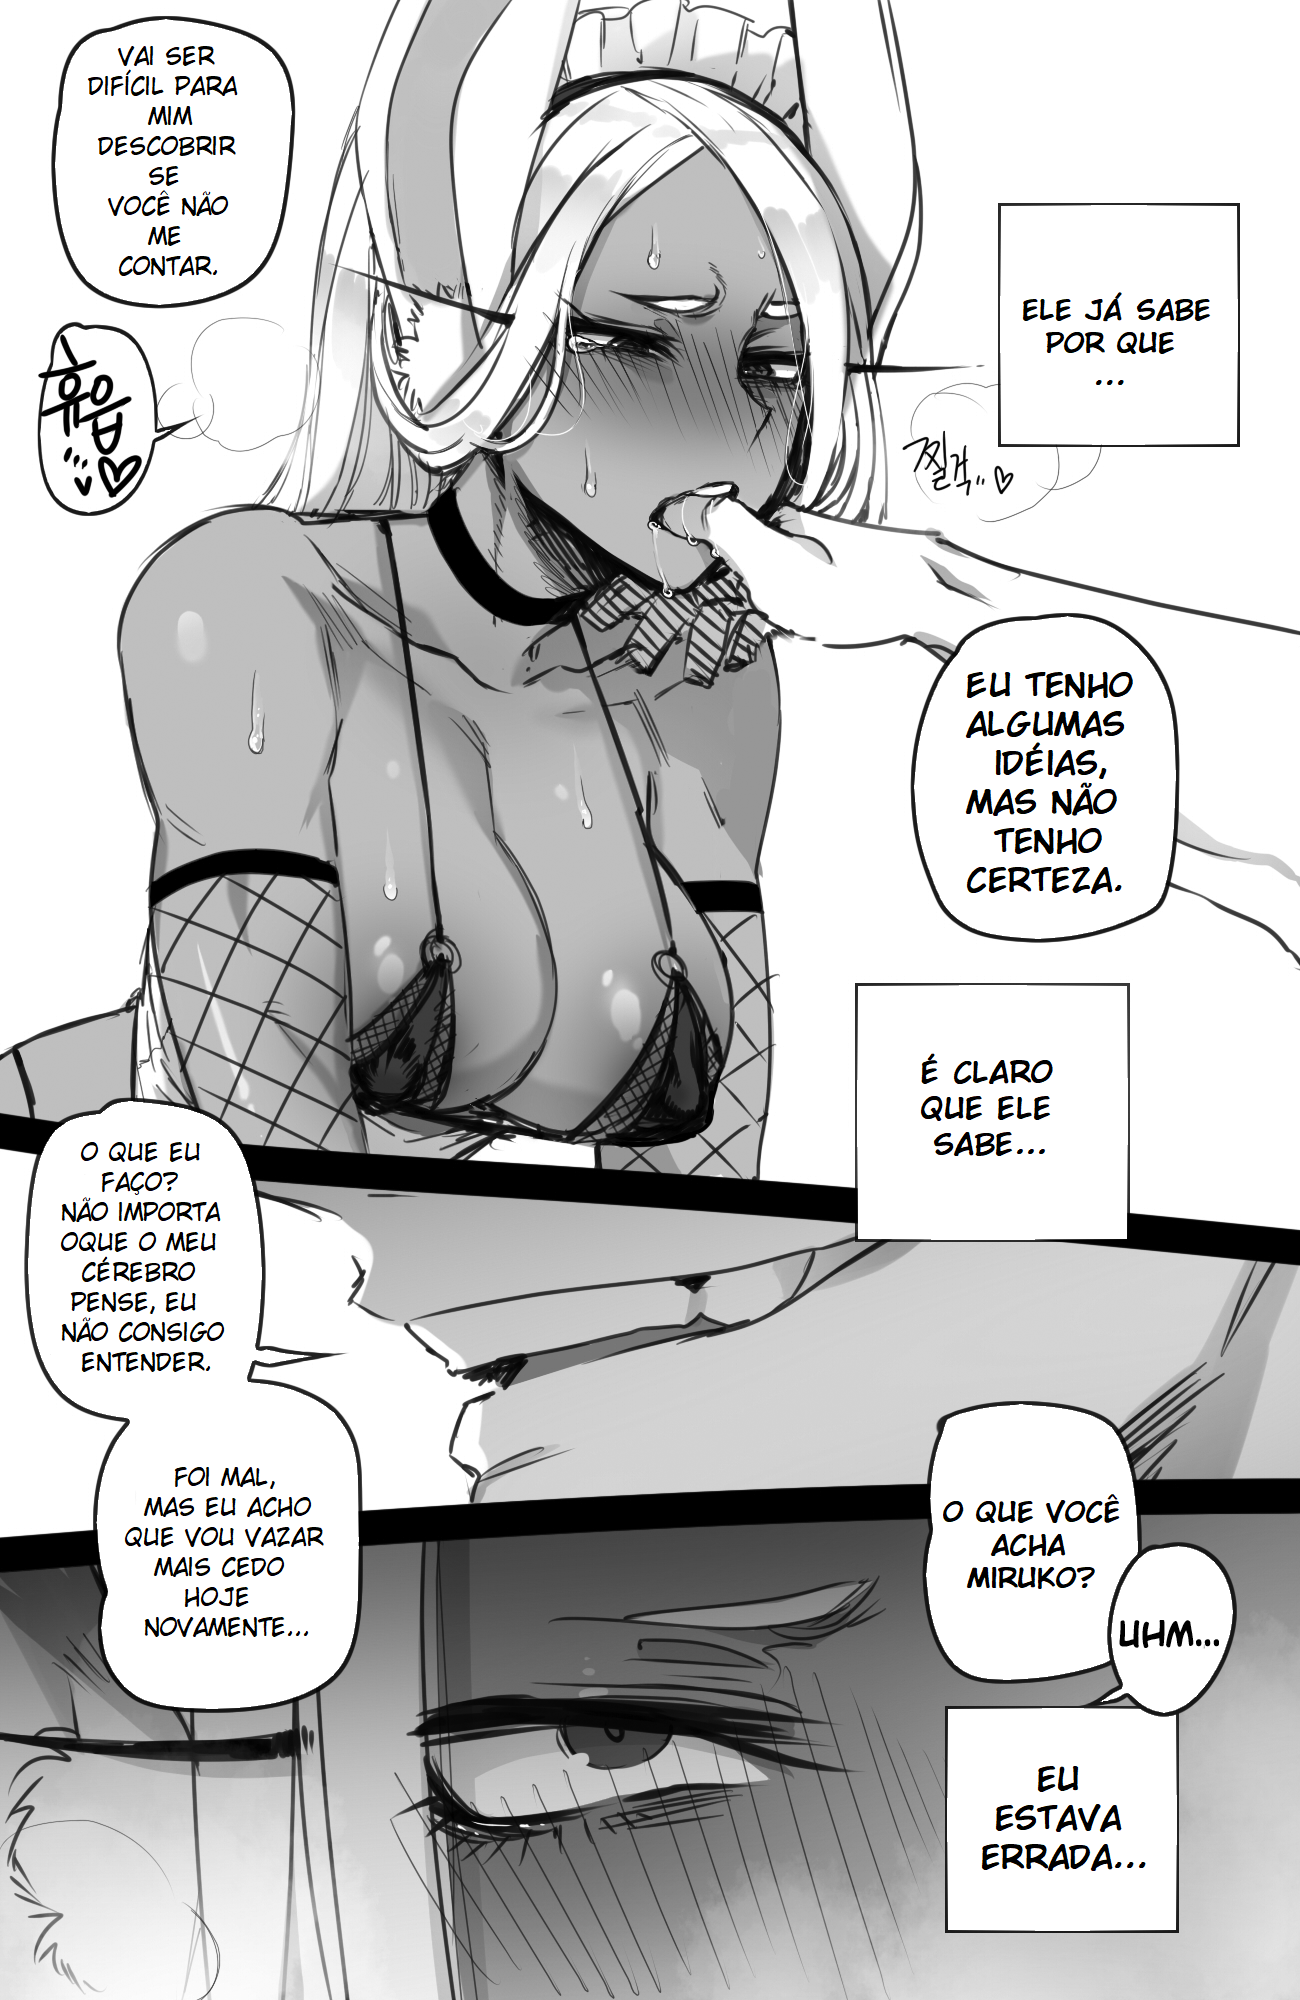 Miruko, A mais gostosa de Boku no Hero Hentai fazendo sexo